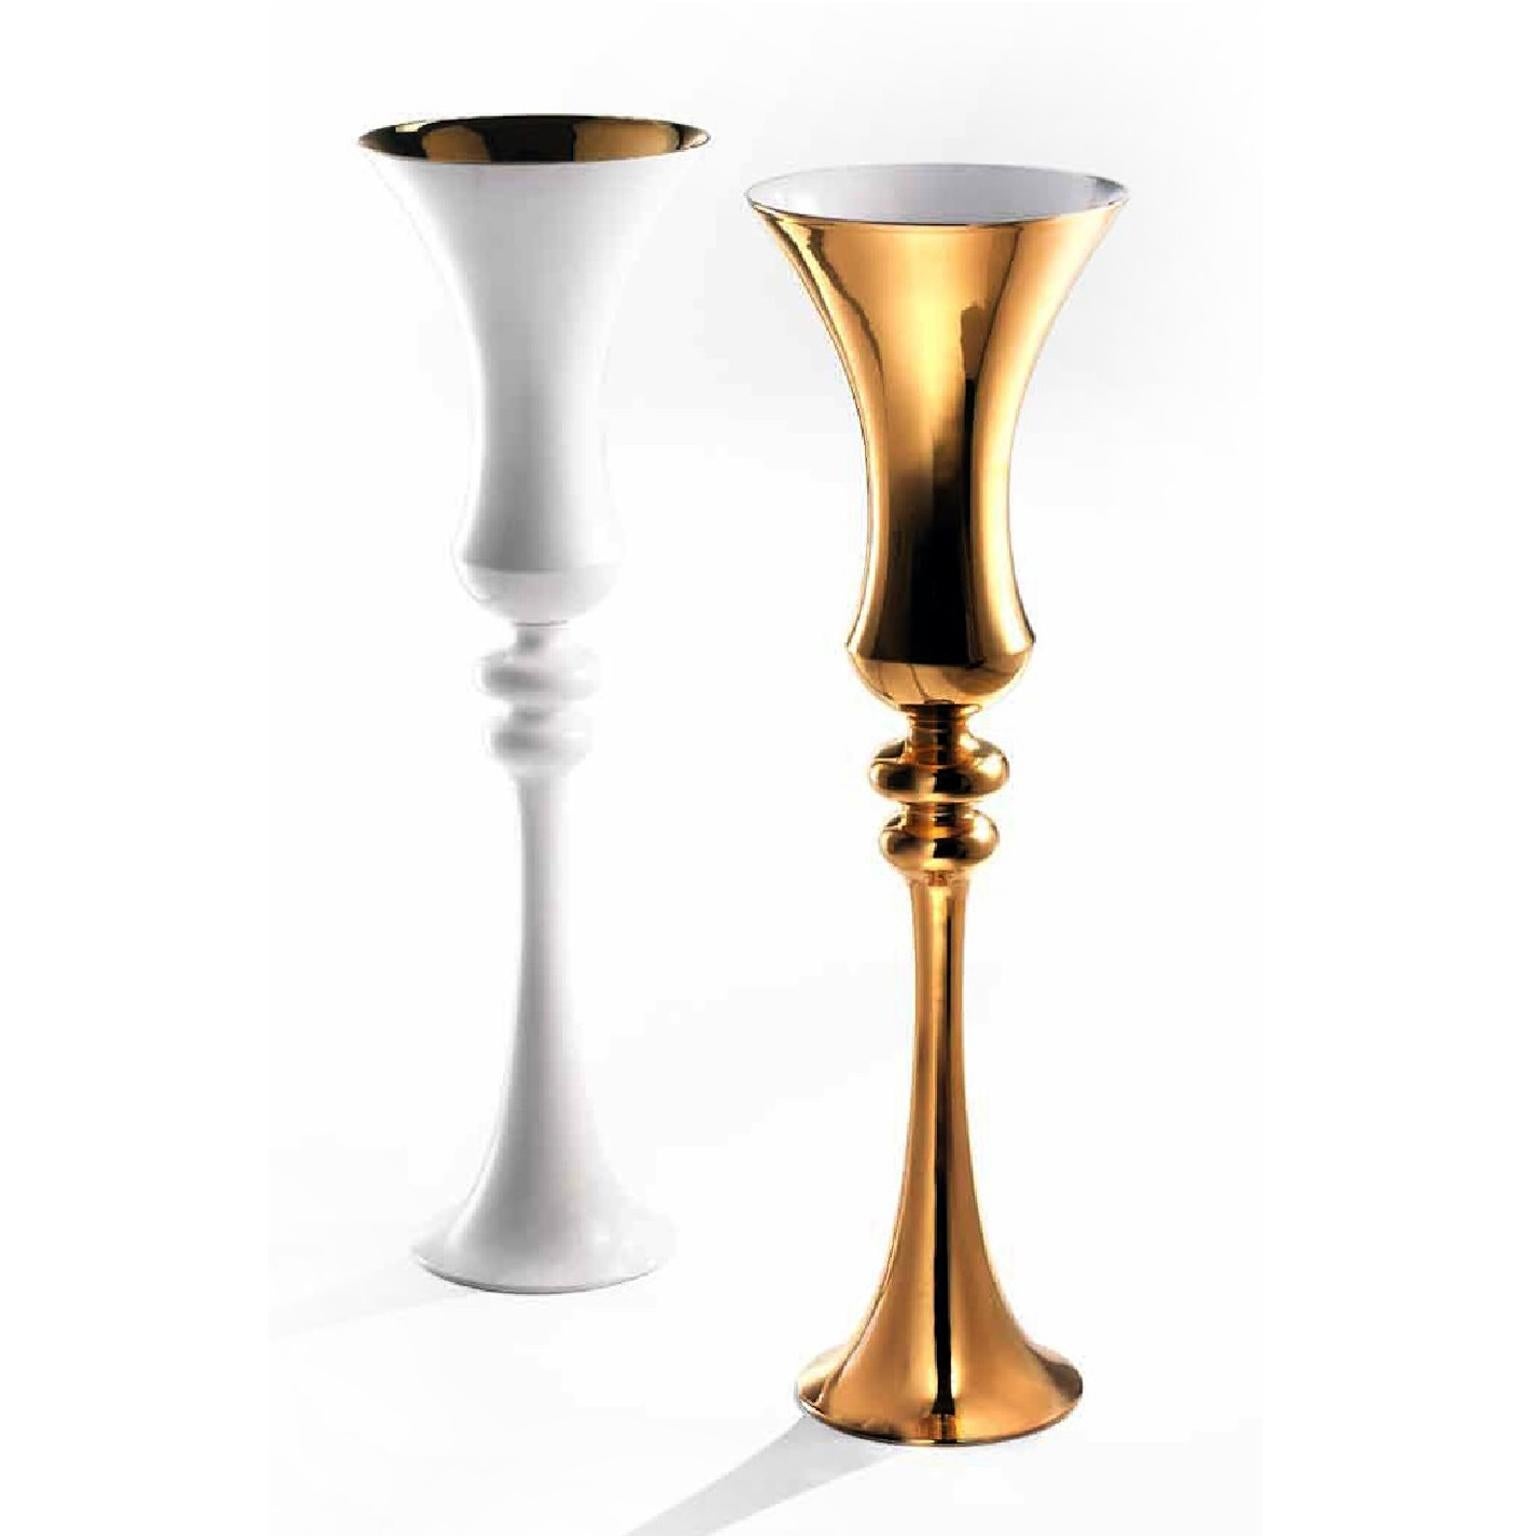 Ceramic vase MERLINO - cod. GL050
handcrafted in 24-karat gold, white glazed inside
measures: Height 90.0 cm., diameter 28.0 cm.